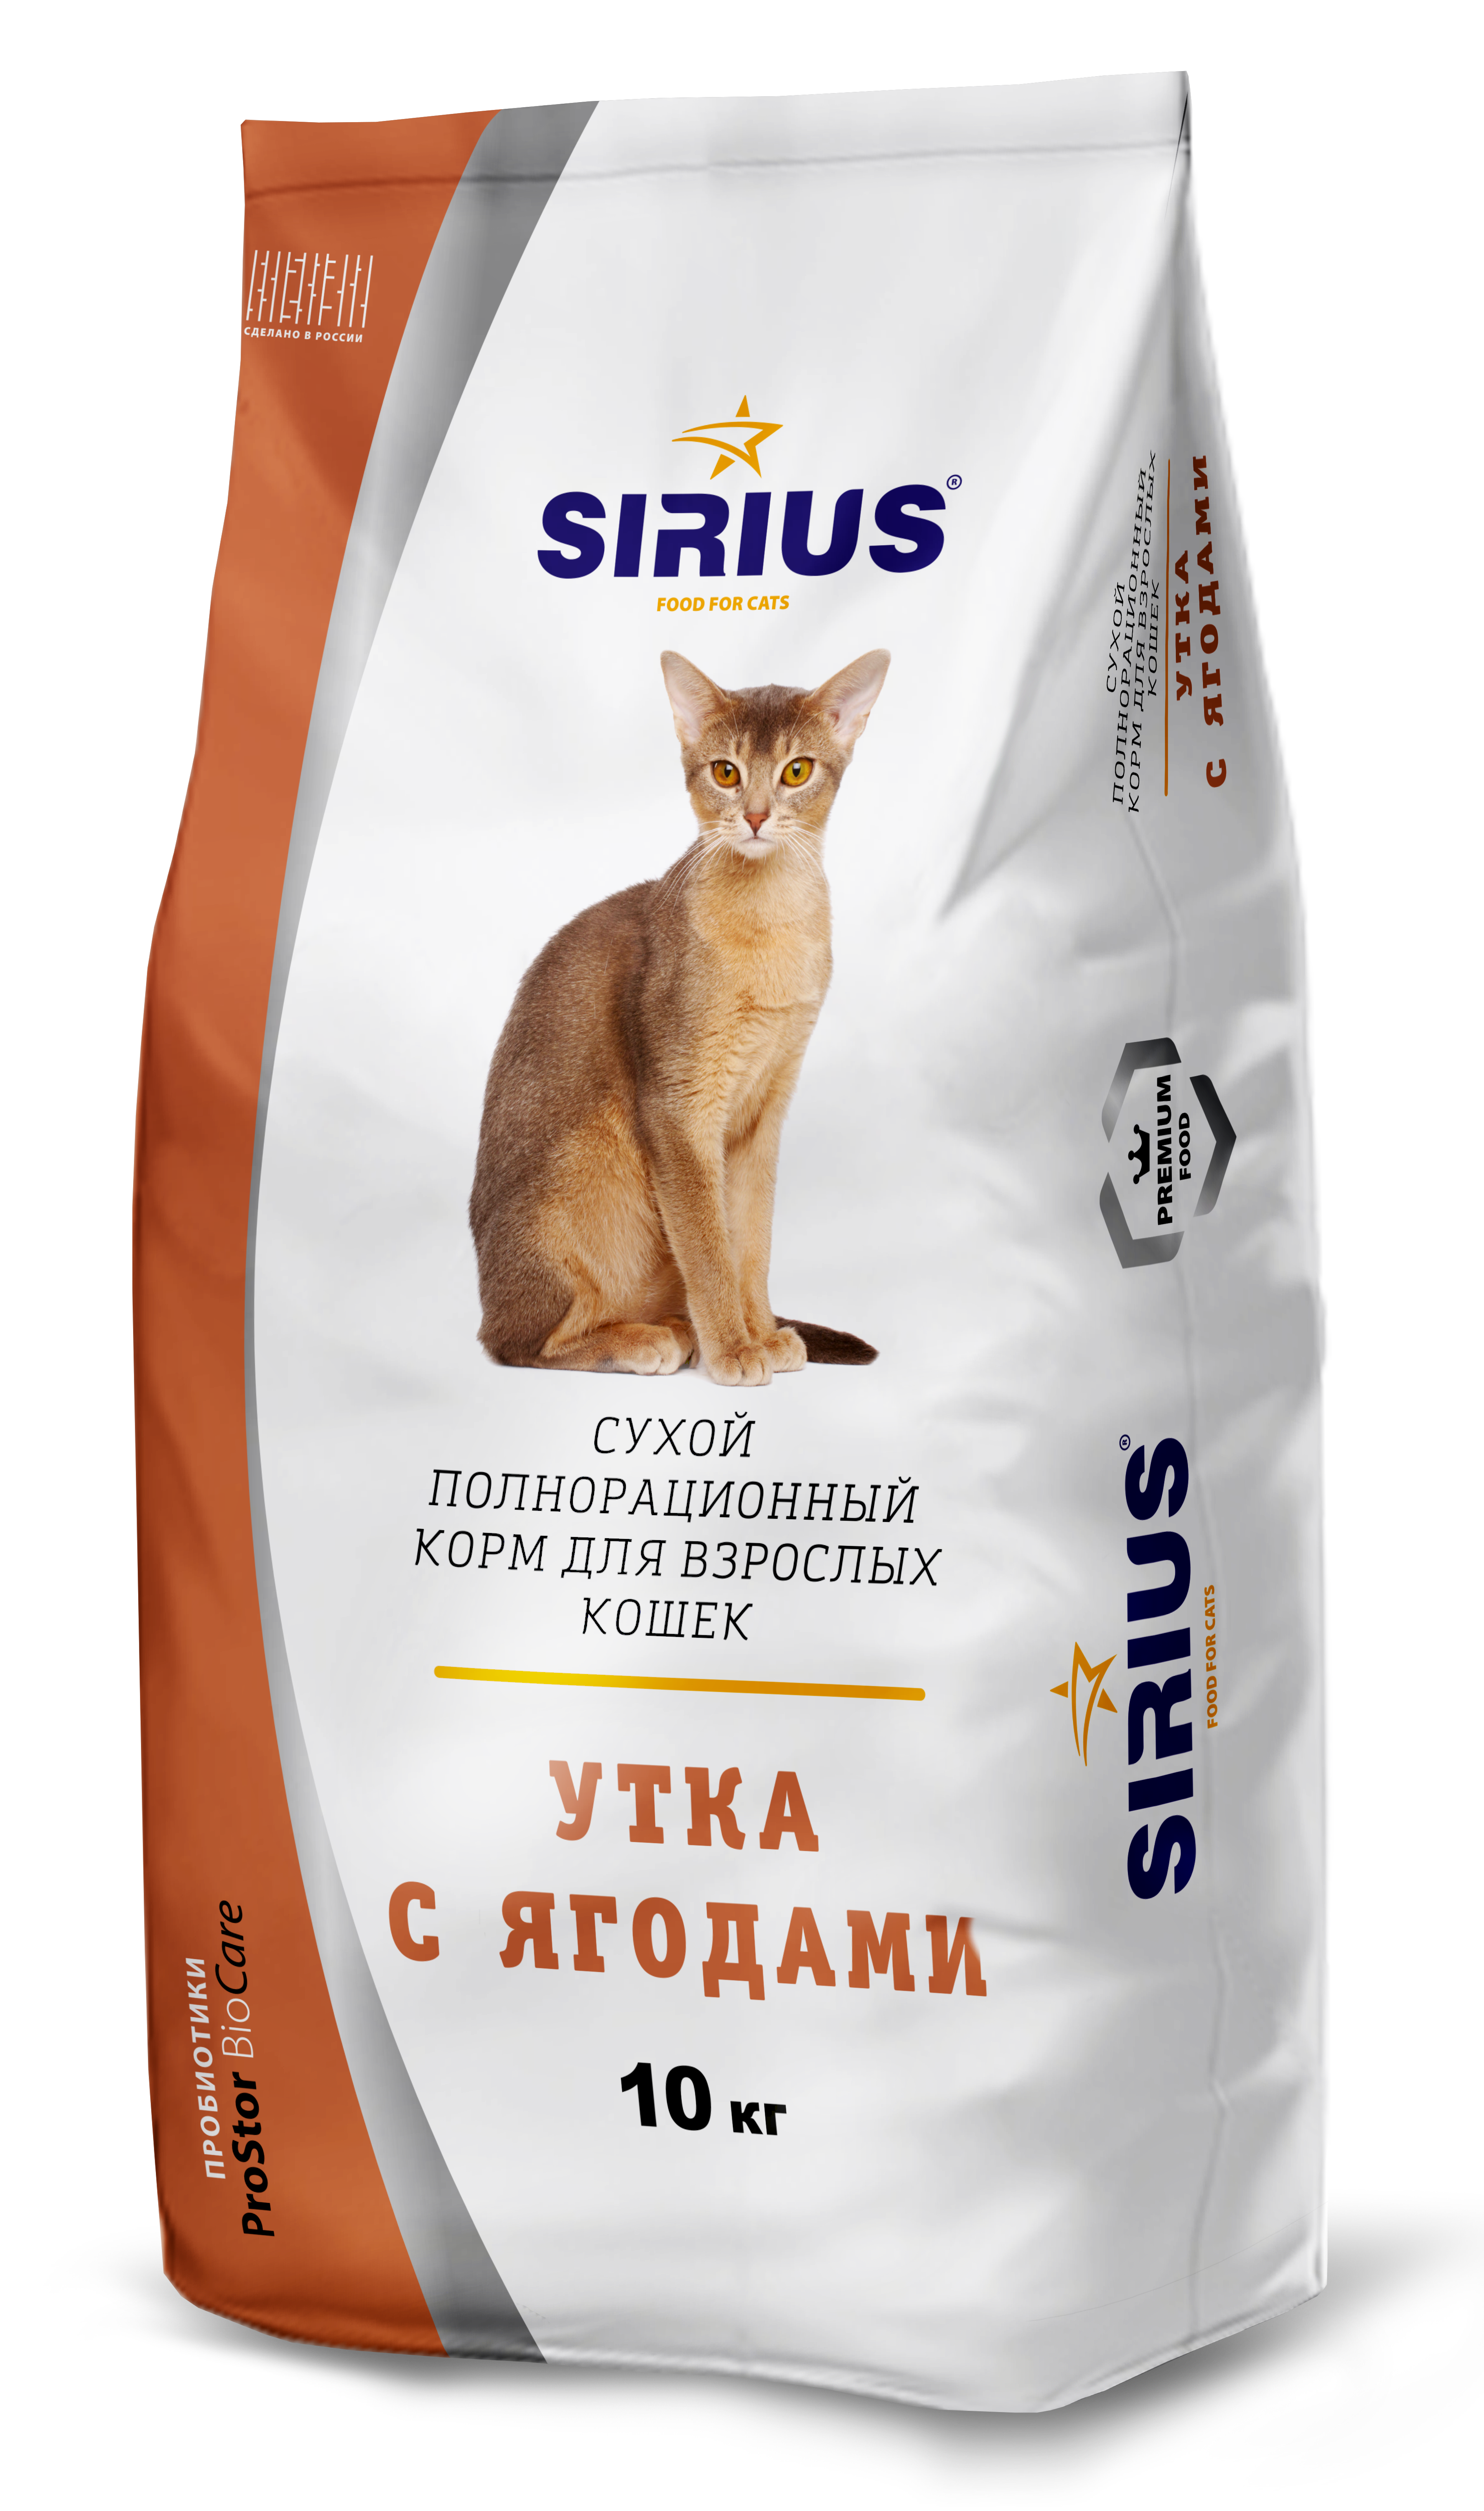 Лучший российский сухой корм для кошек. Корм Сириус для кошек лосось и рис. Сириус корм для кошек 10 кг. Sirius Platinum корм. Корм Сириус премиум для кошек.